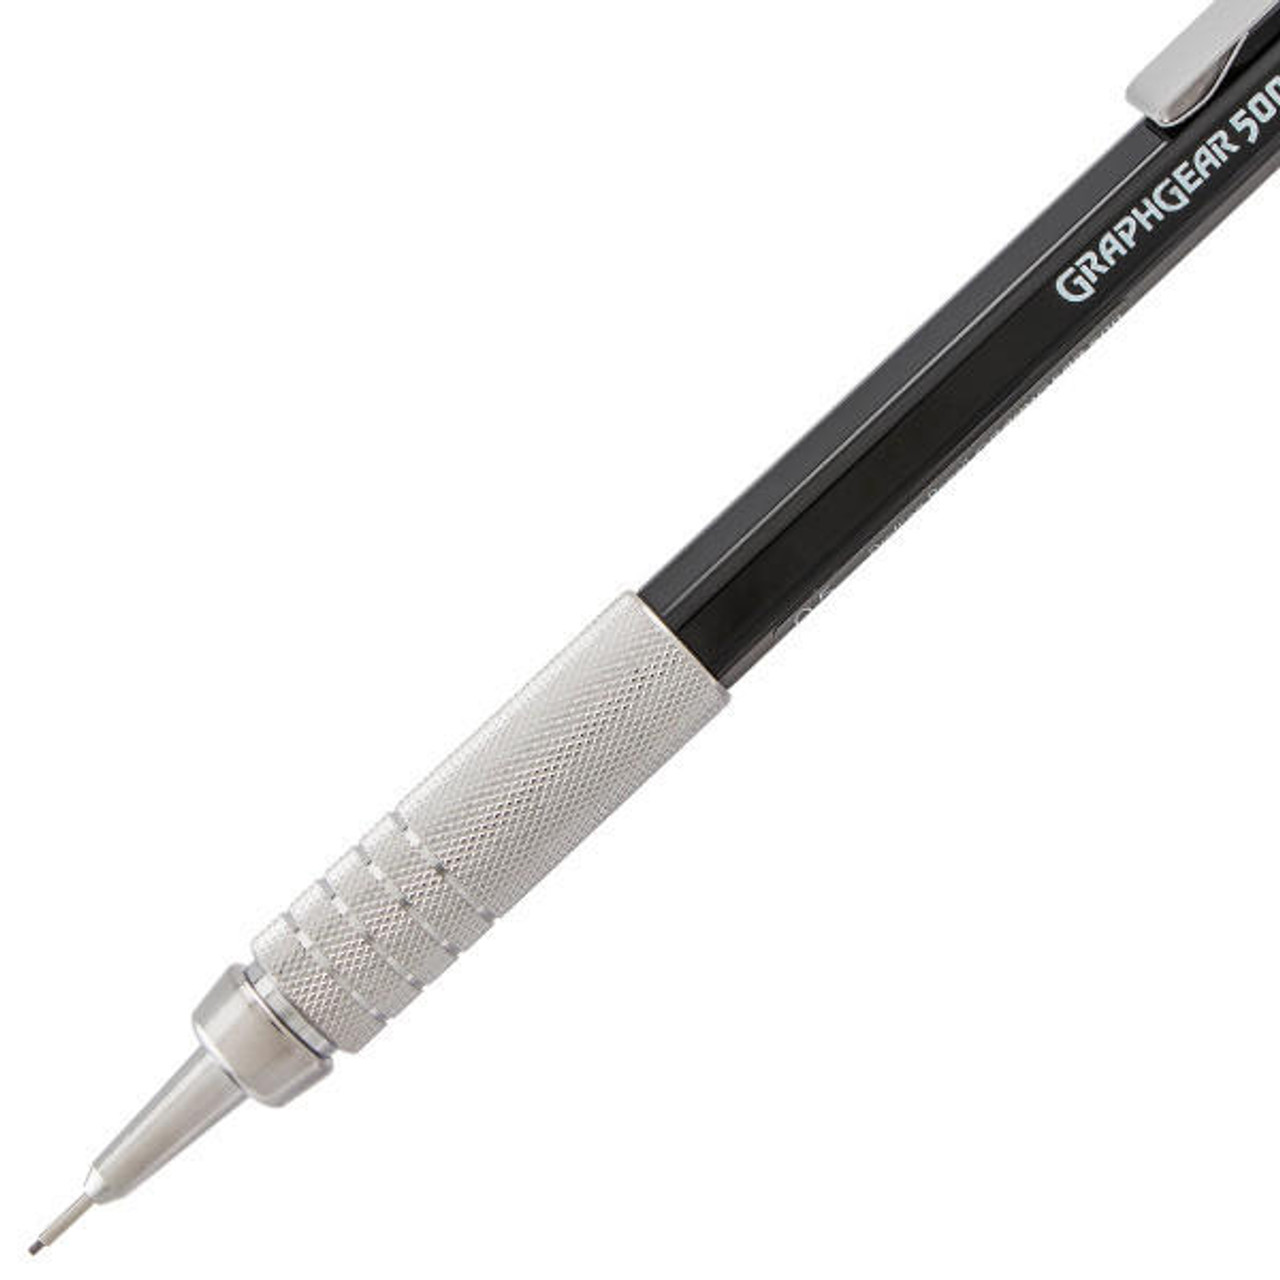 Pentel - GraphGear Drafting Pencil - GraphGear 1000 - .5mm - Black